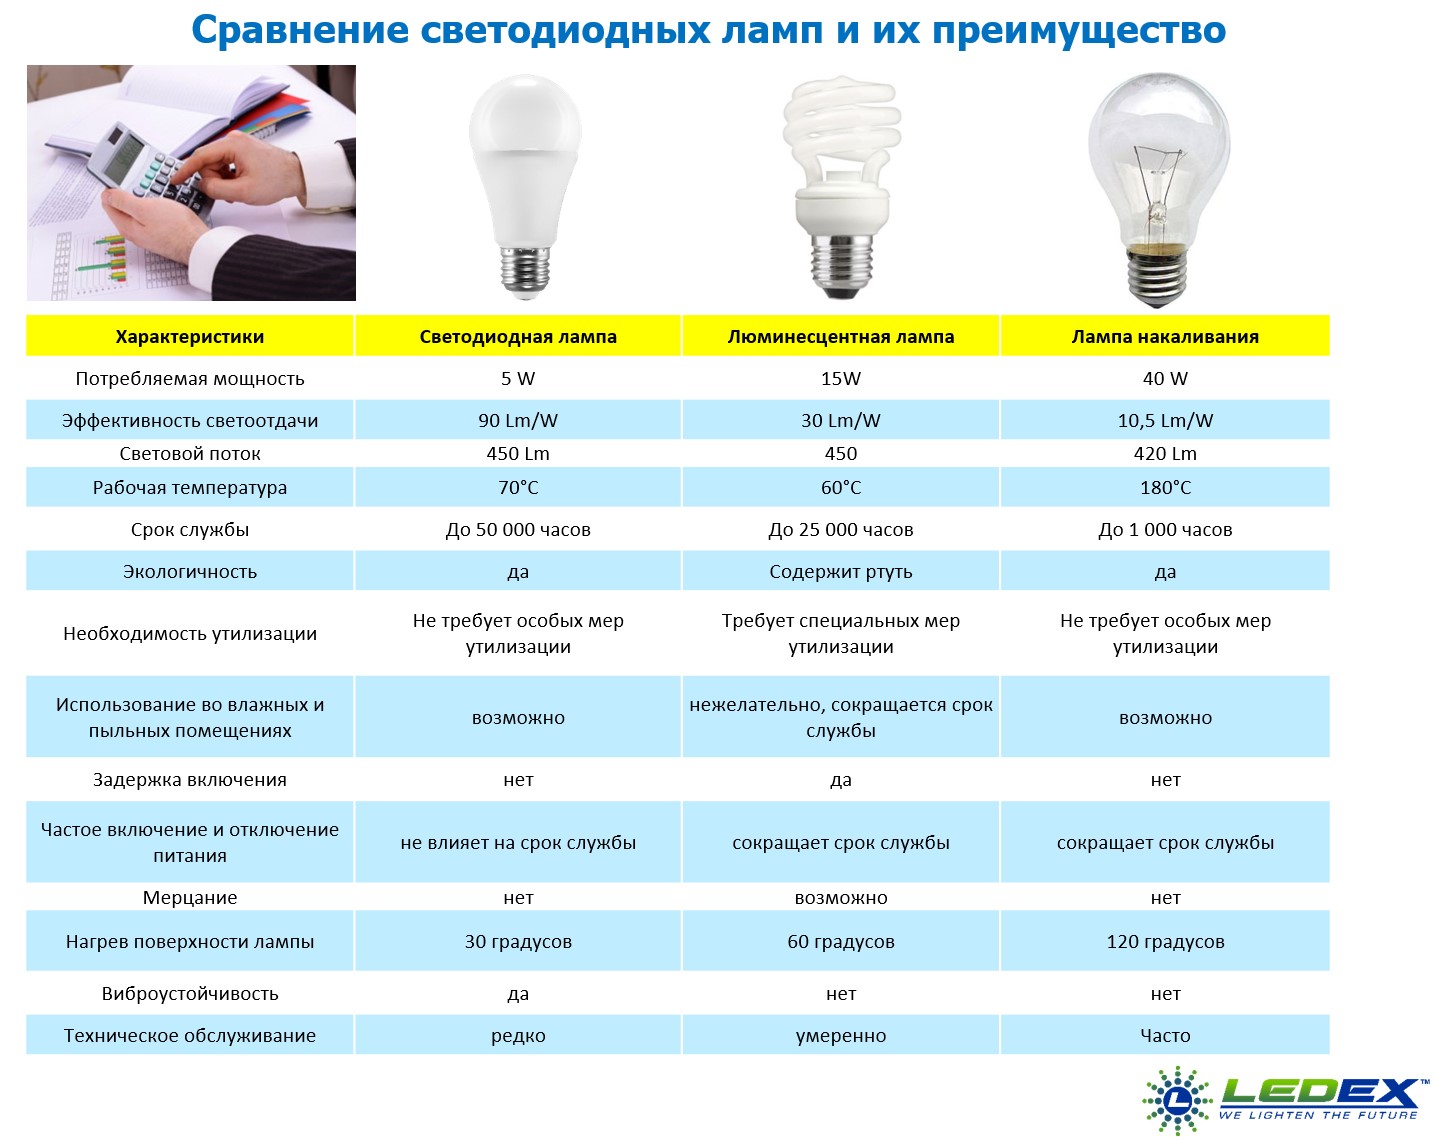 светодиодные лампы для дома виды и характеристики